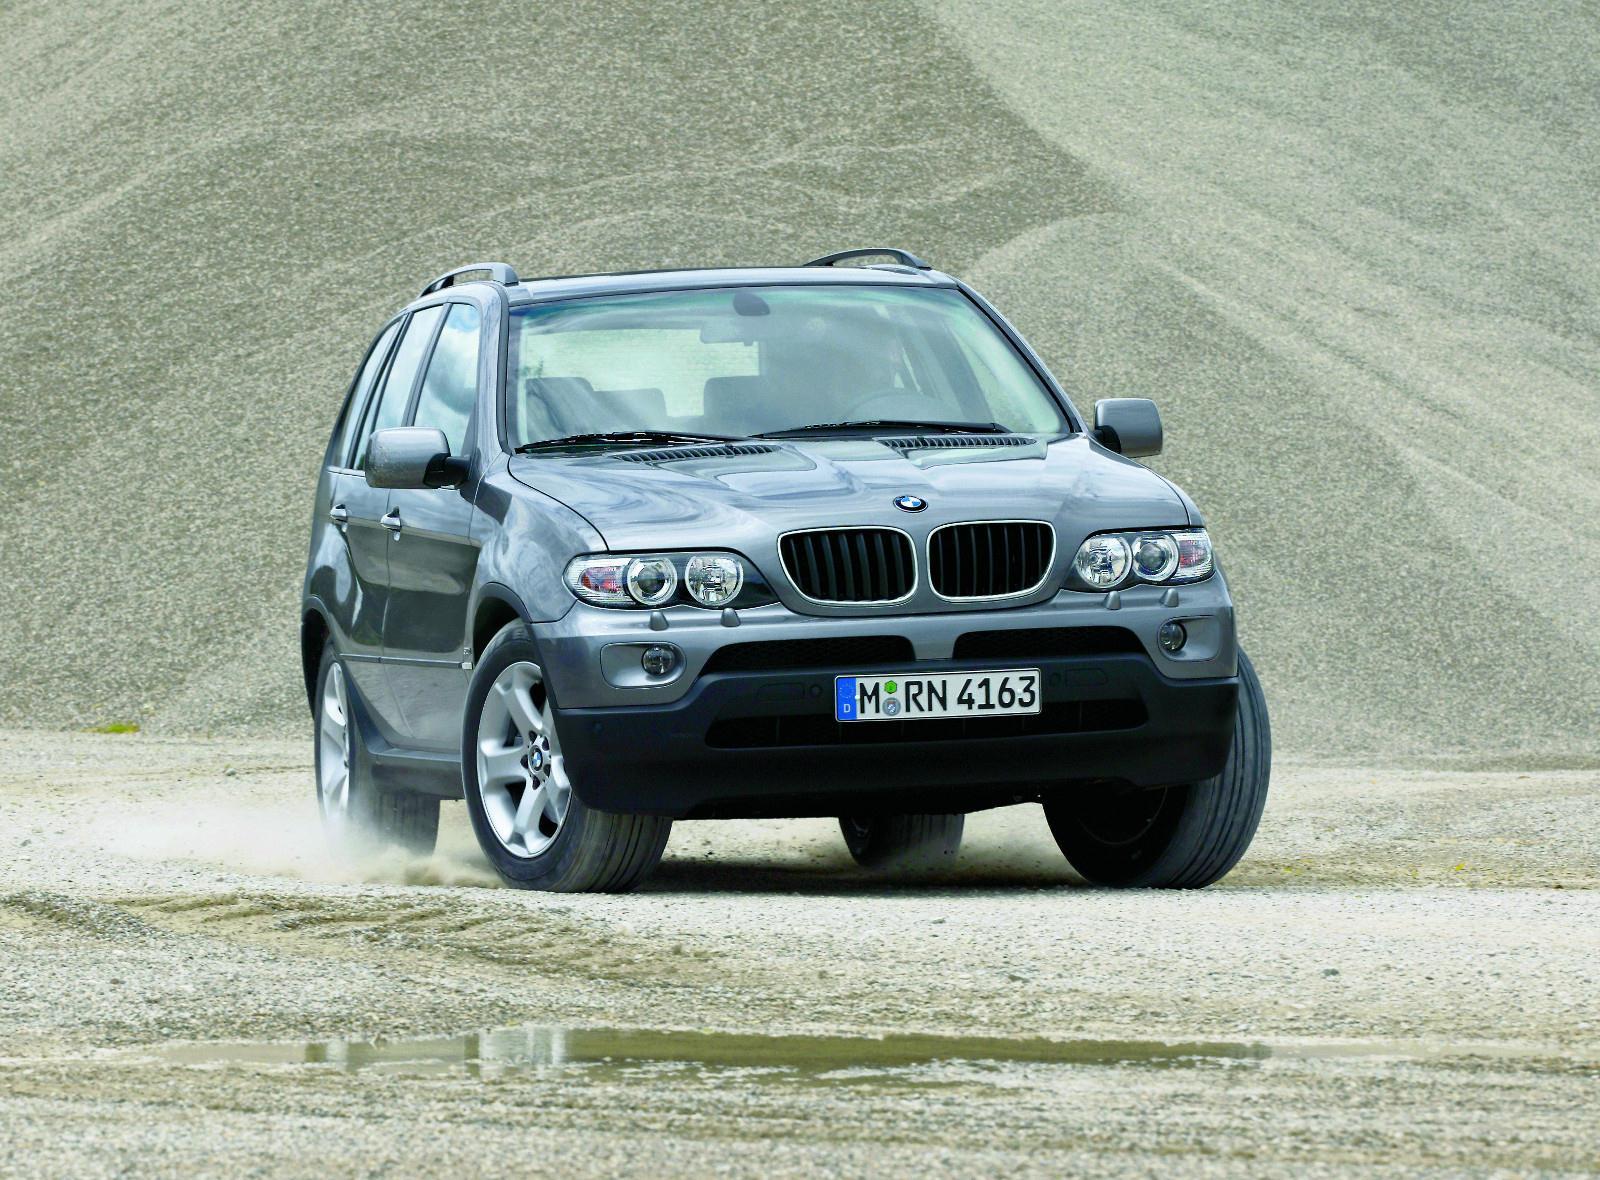 2000 - 2006 Bj. BMW X5 E53 - BMWs erster SUV